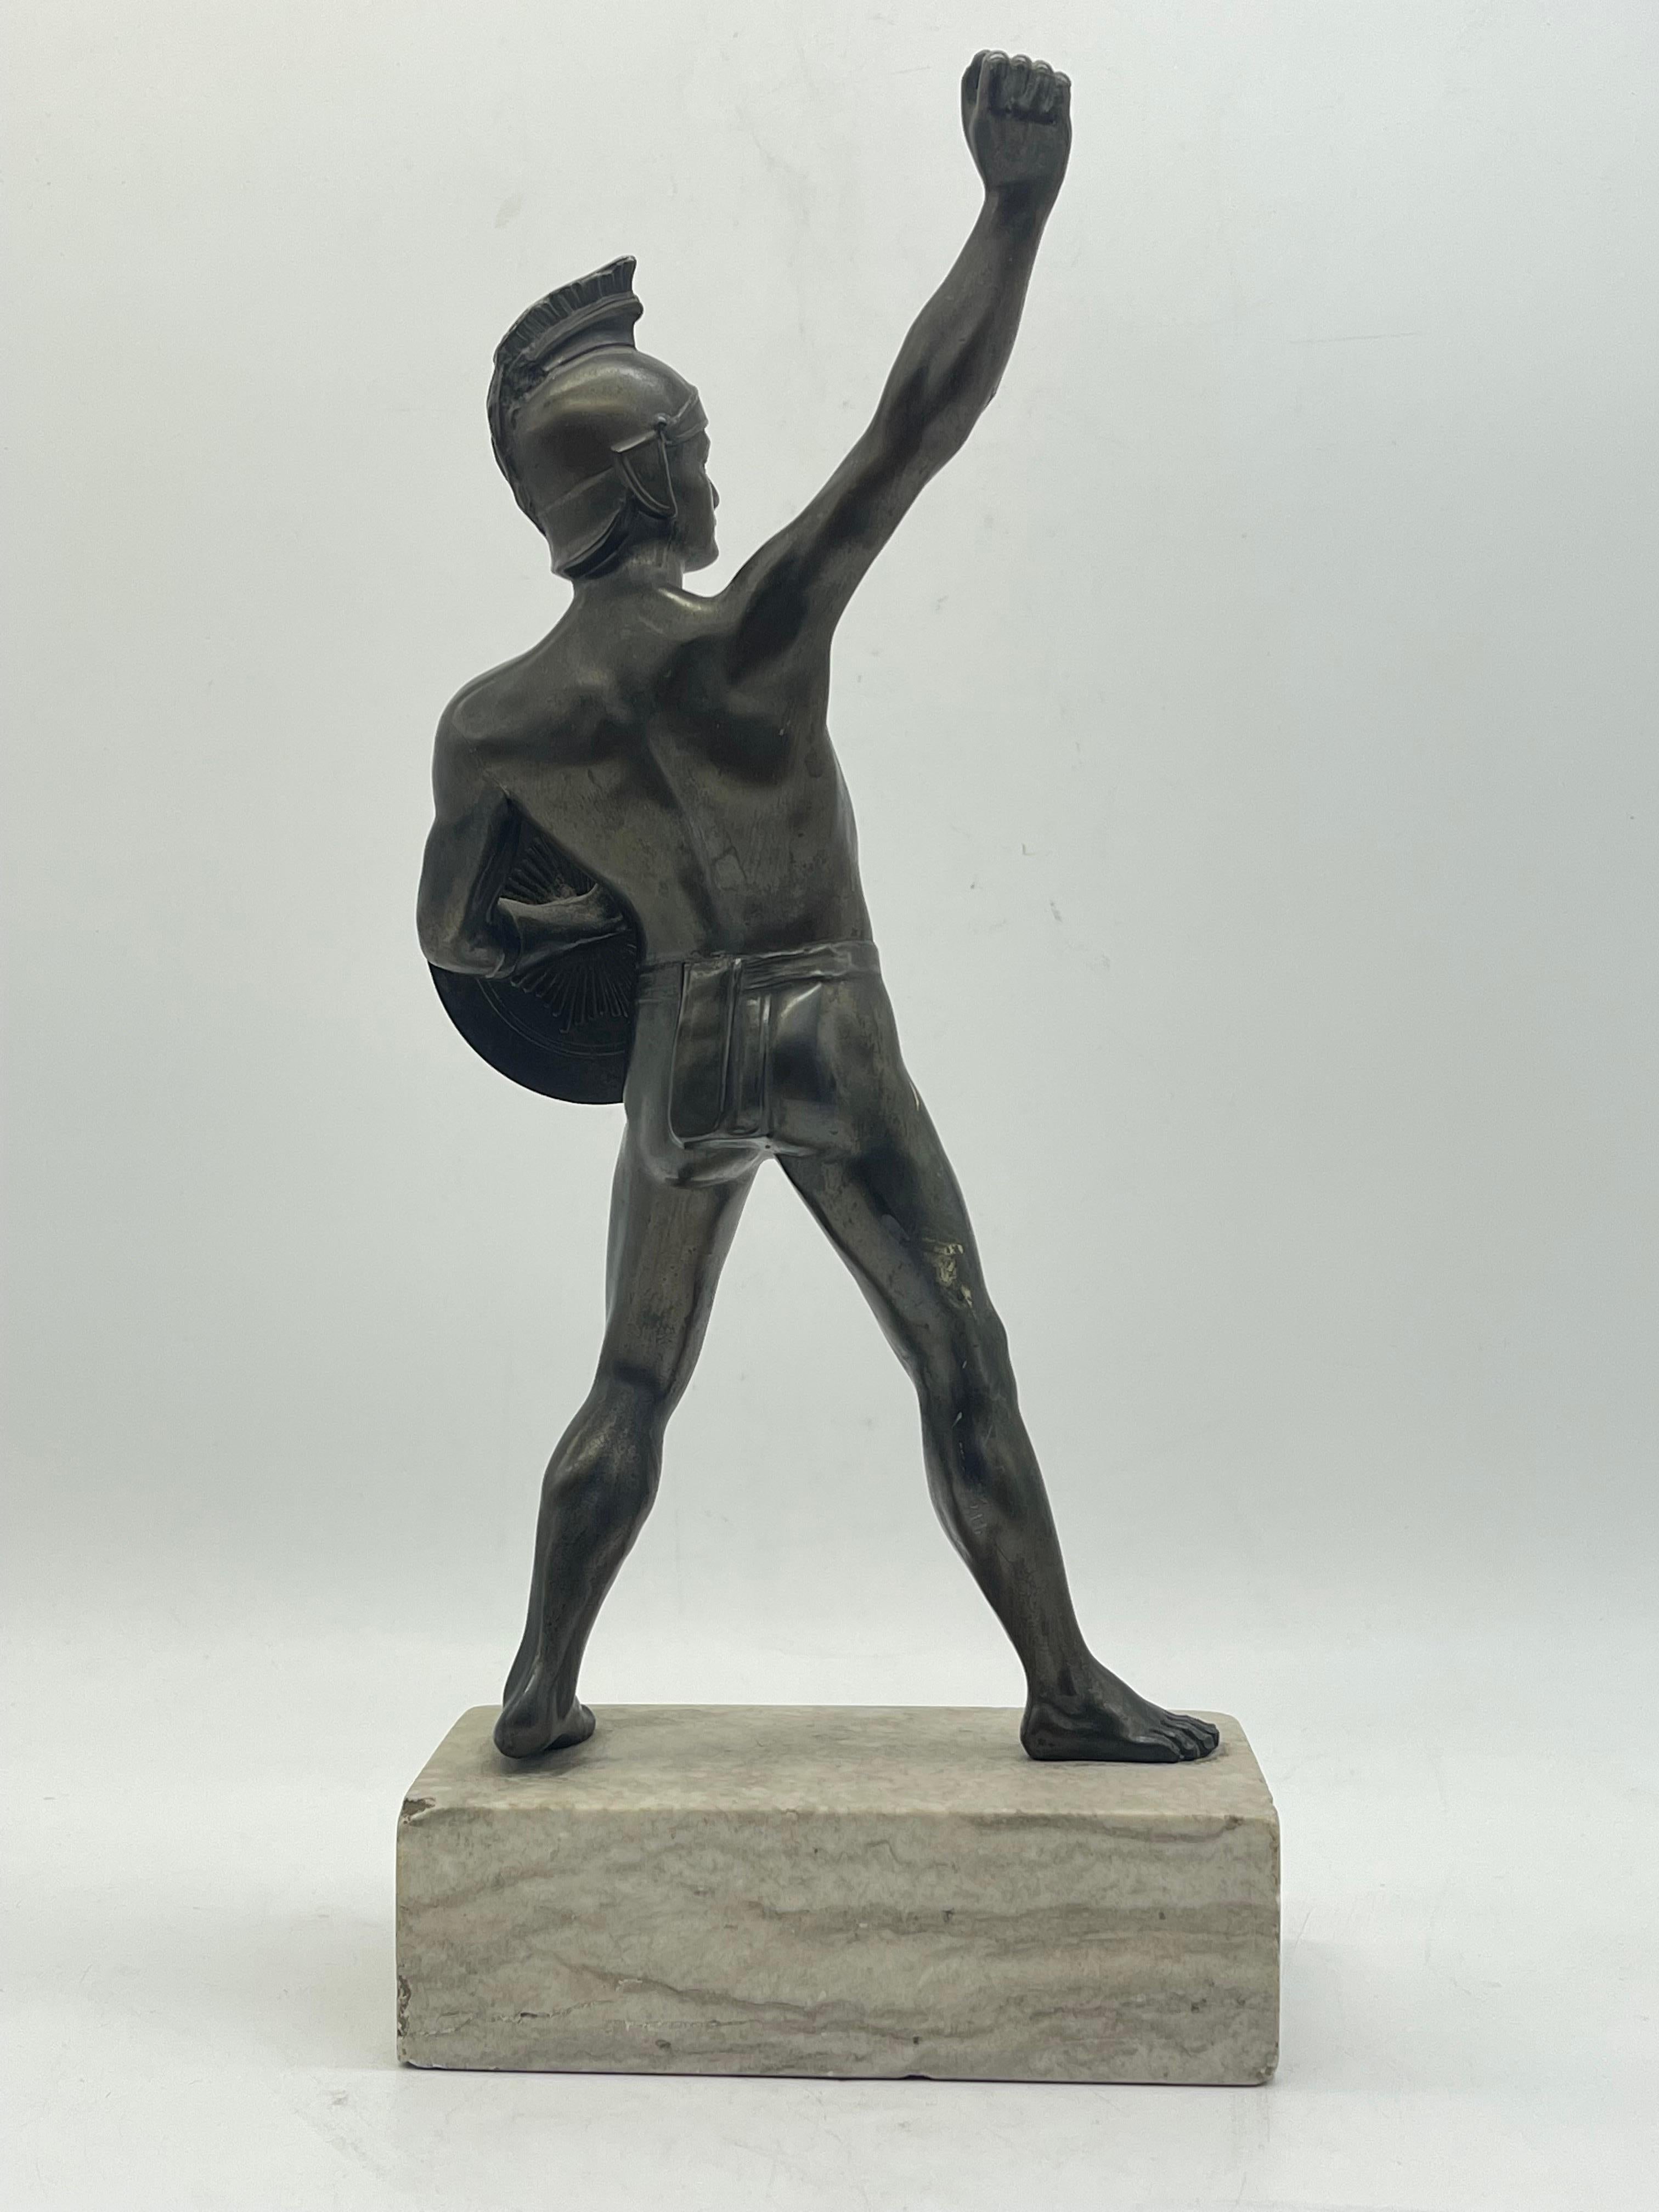 Athletic Bronze-Krieger-Skulptur eines Kriegers auf Marmorsockels, griechische Figur mit Schild im Angebot 1